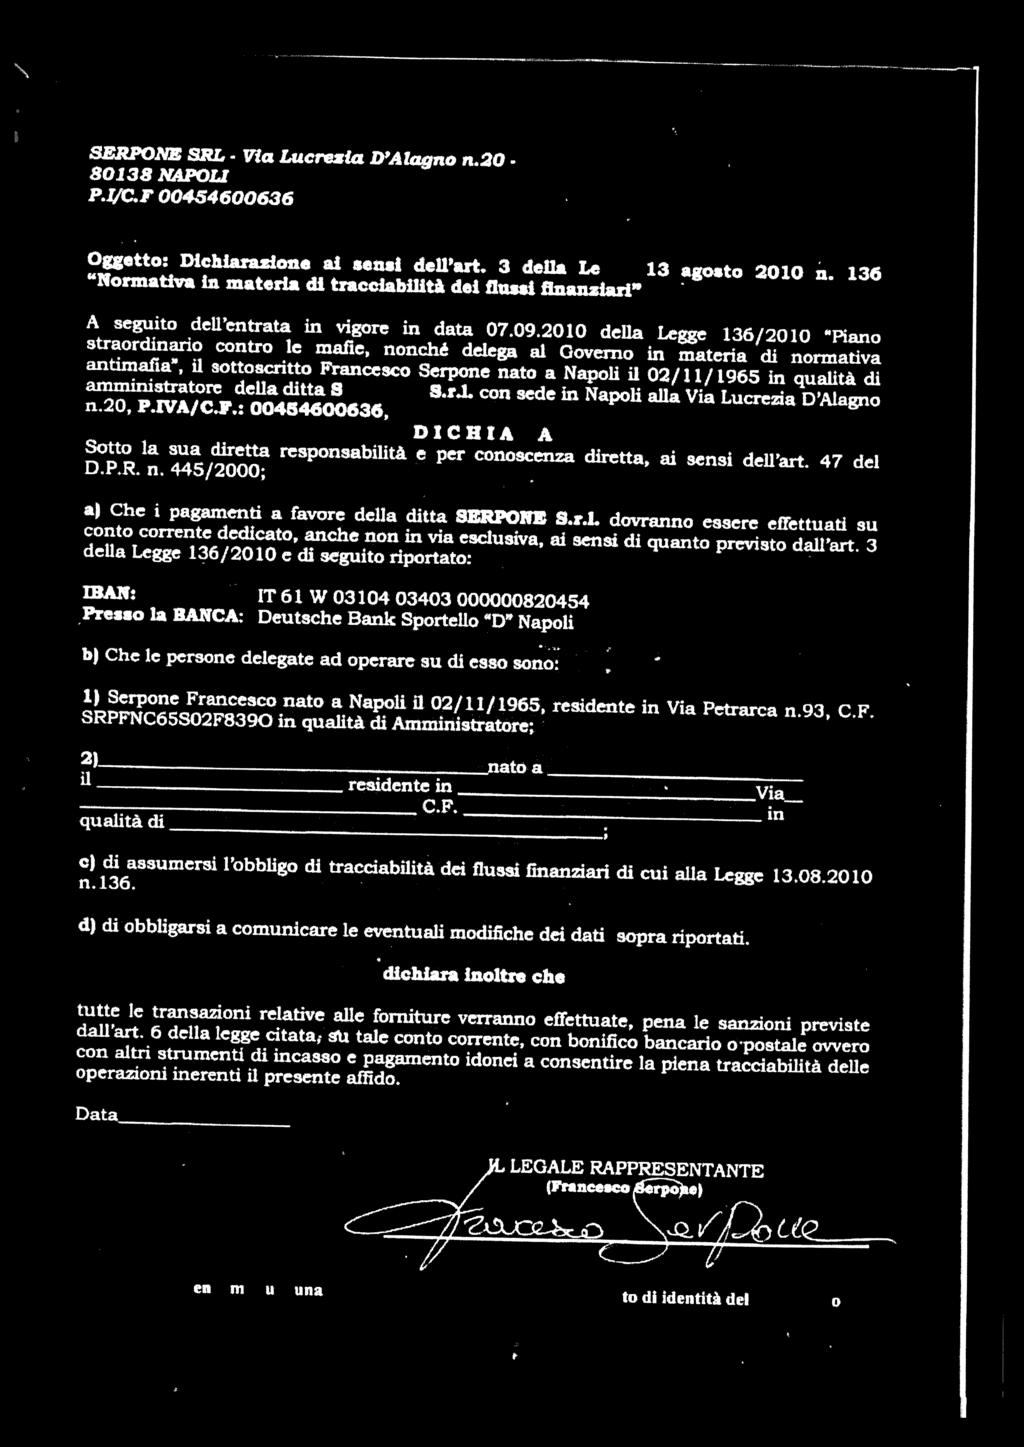 Via SERPONE SRL - Via Lucrezia D Alagno n.20. 80138 NAPOL p.1c.f 00454600636 Oggetto: Dichiarazione al sensi dell art. 3 della Legge 13 agosto 2010 u.